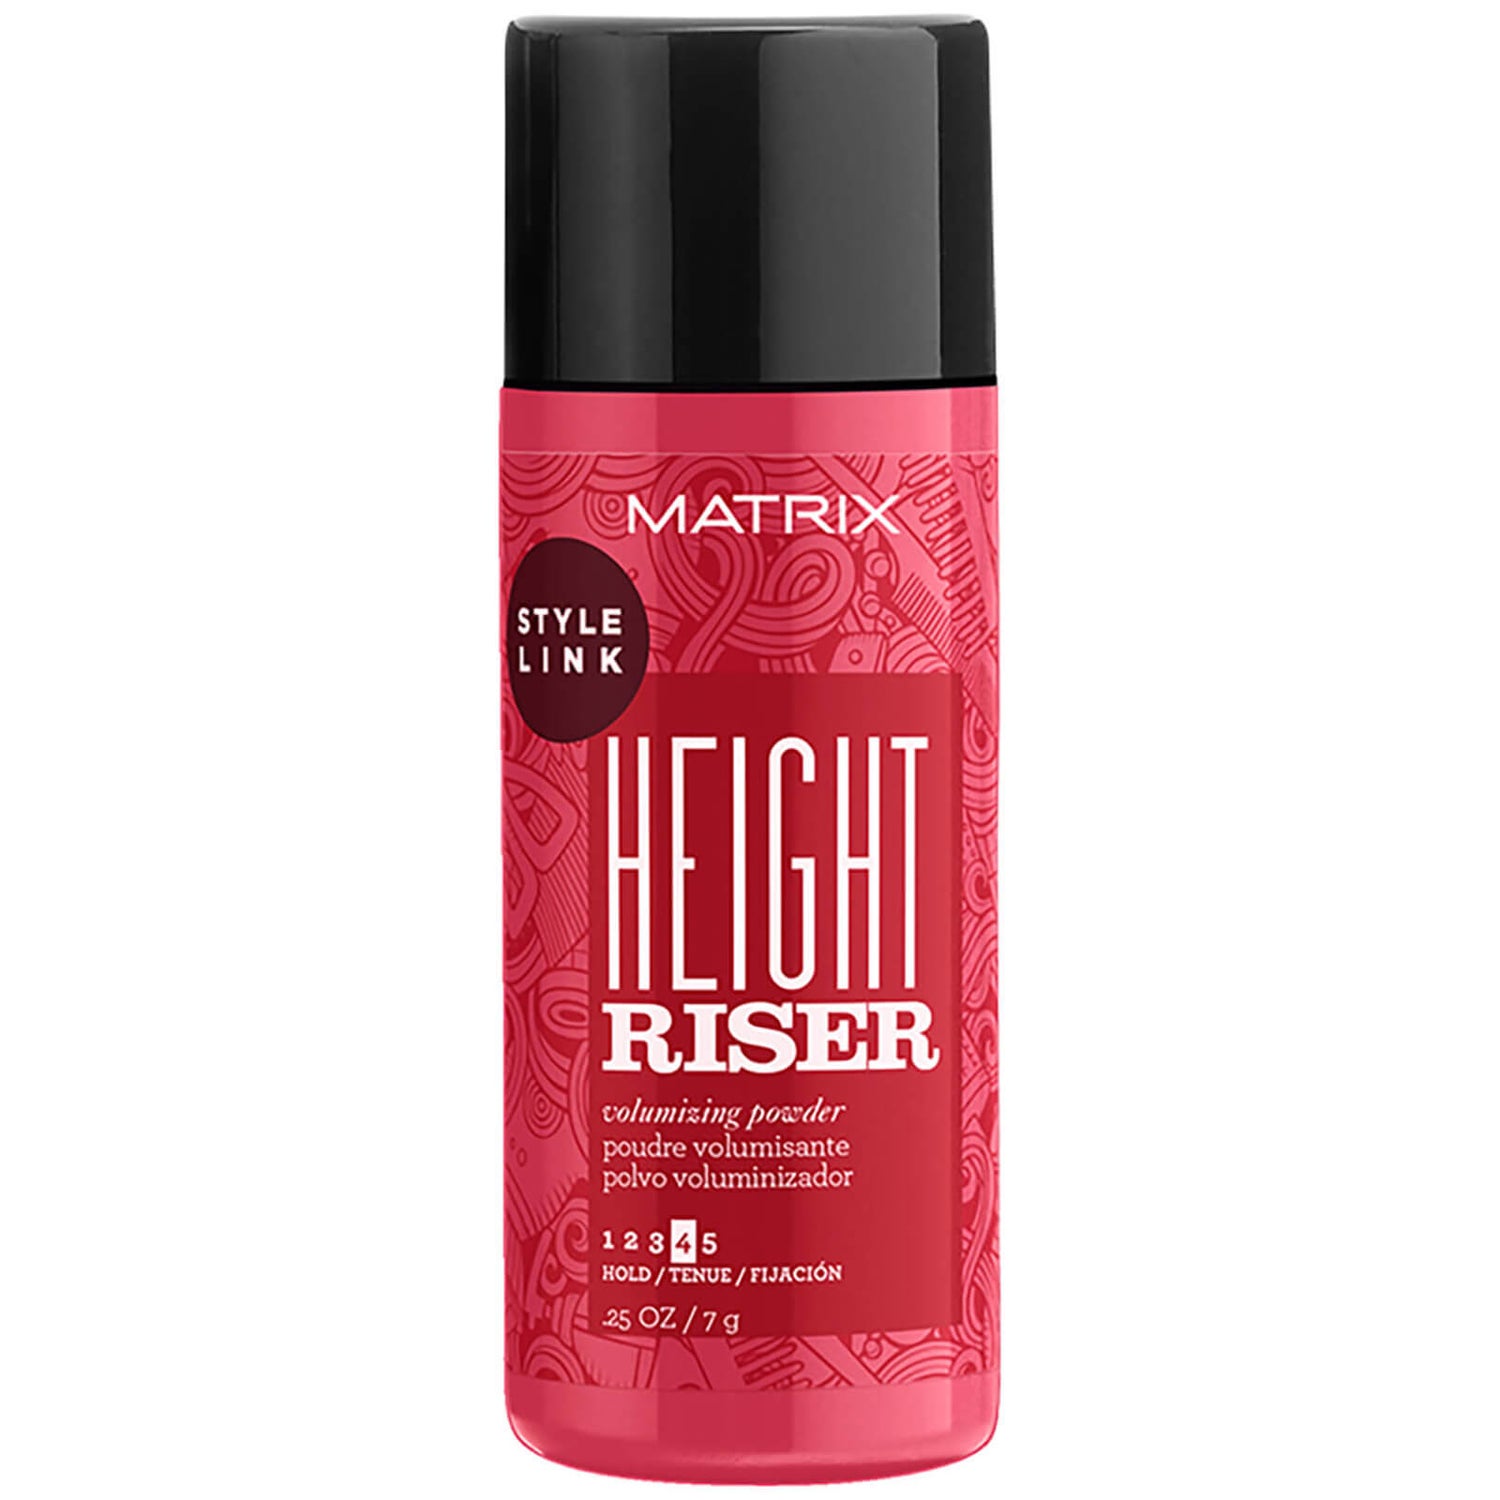 Matrix Style Link Height Riser - puder nadający objętości włosom 7g